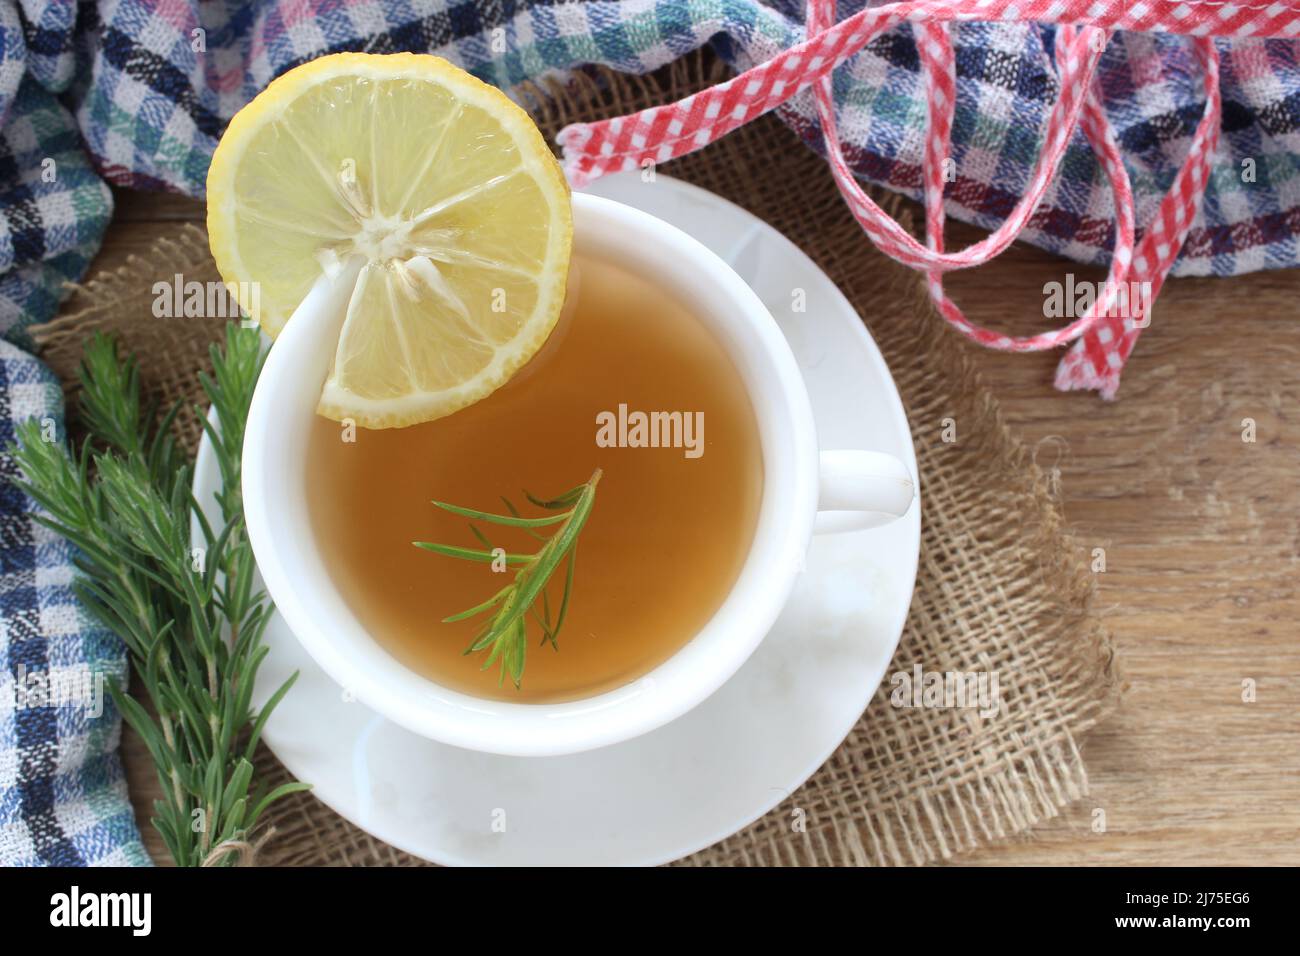 Une tasse de thé au romarin et une tranche de citron dans la cuisine, vue de dessus, tisane pour l'idée de concept d'hiver. Banque D'Images